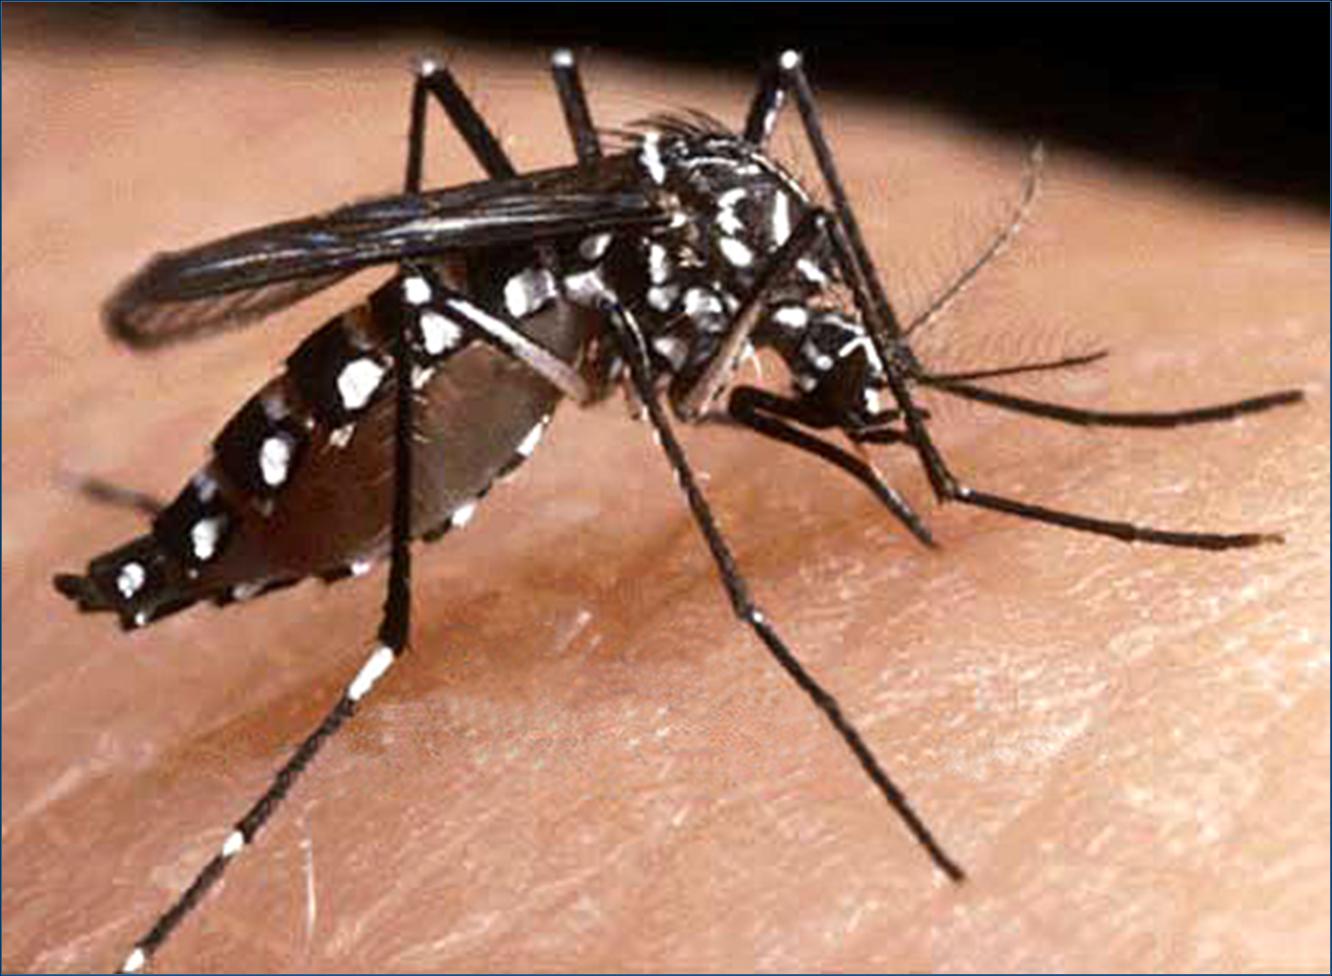 Anvisa aprova registro de nova vacina contra a dengue